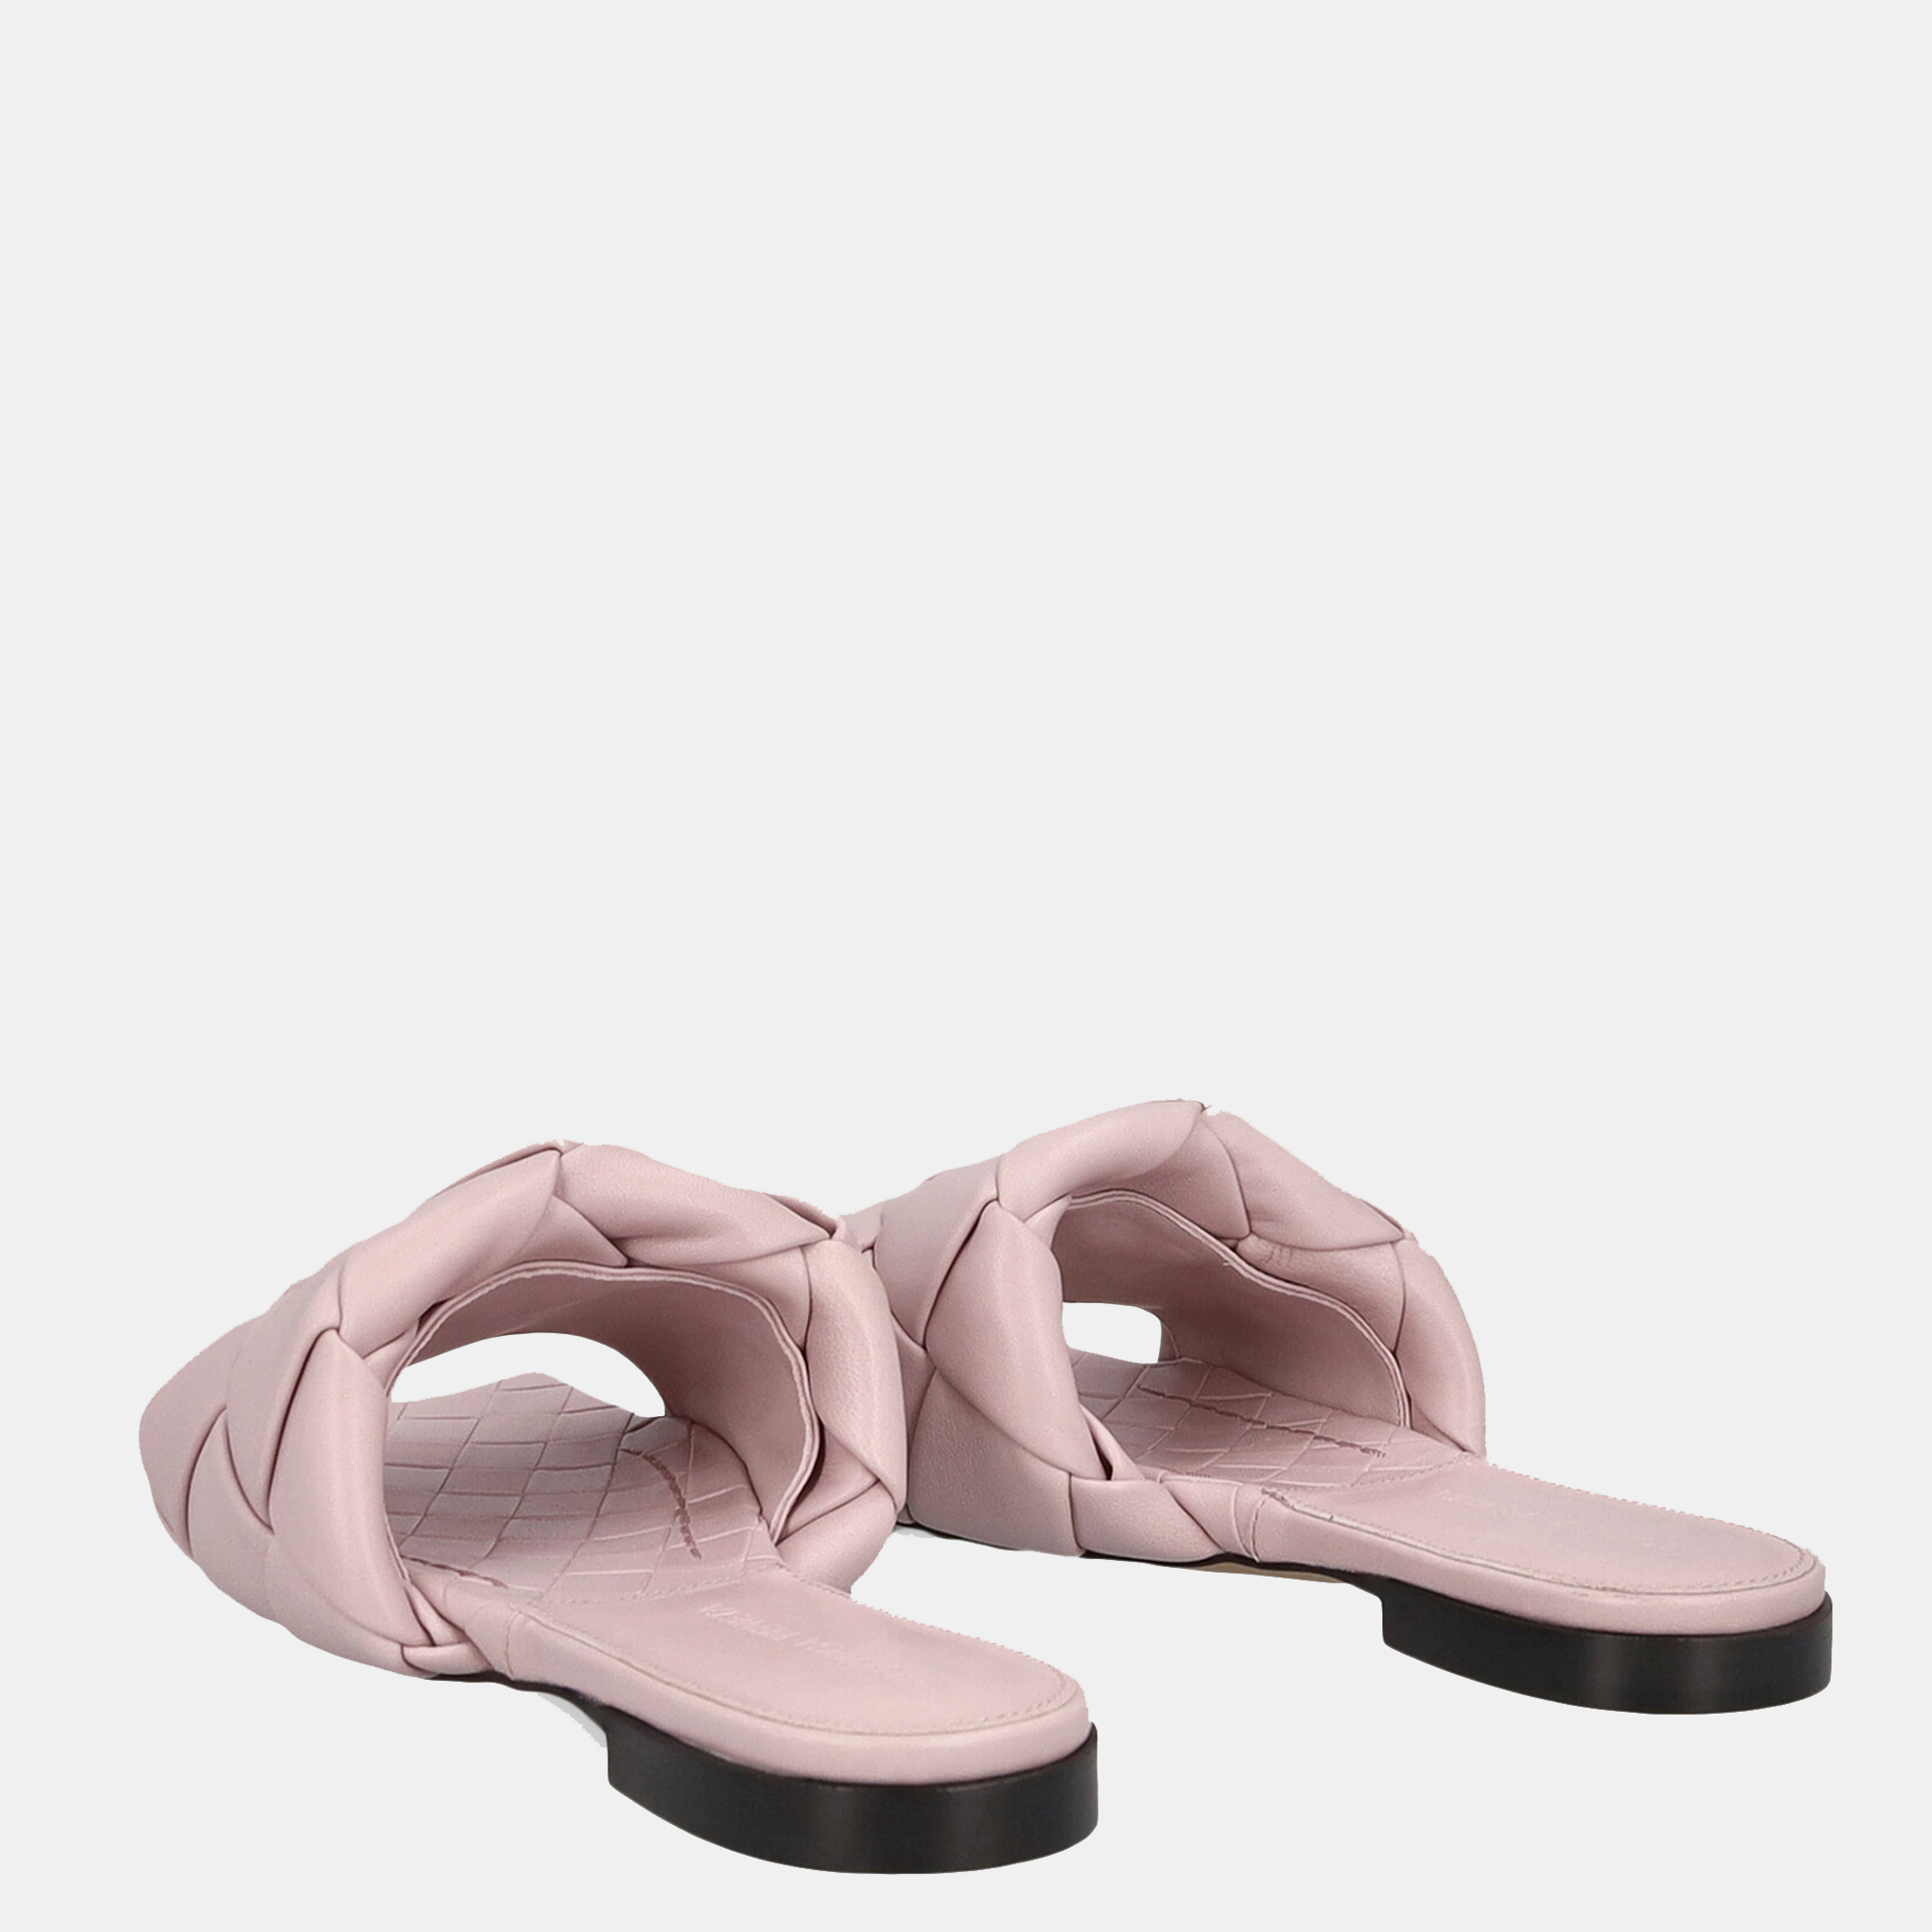 Bottega Veneta Women's Leather Slippers - Pink - EU 35